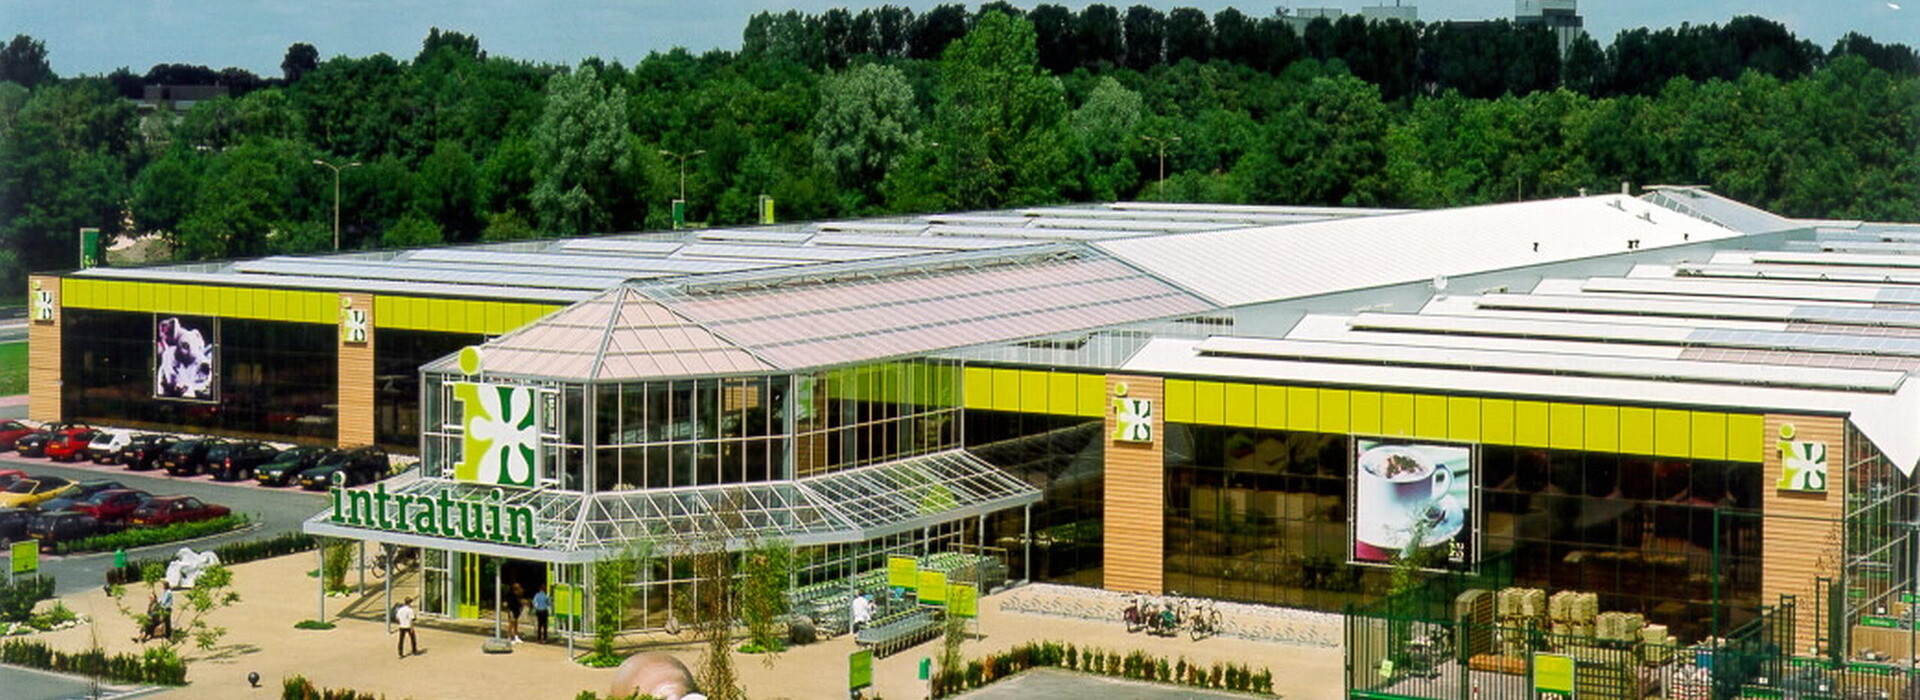 Neubau Intratuin, Almelo (Niederlande) 2000